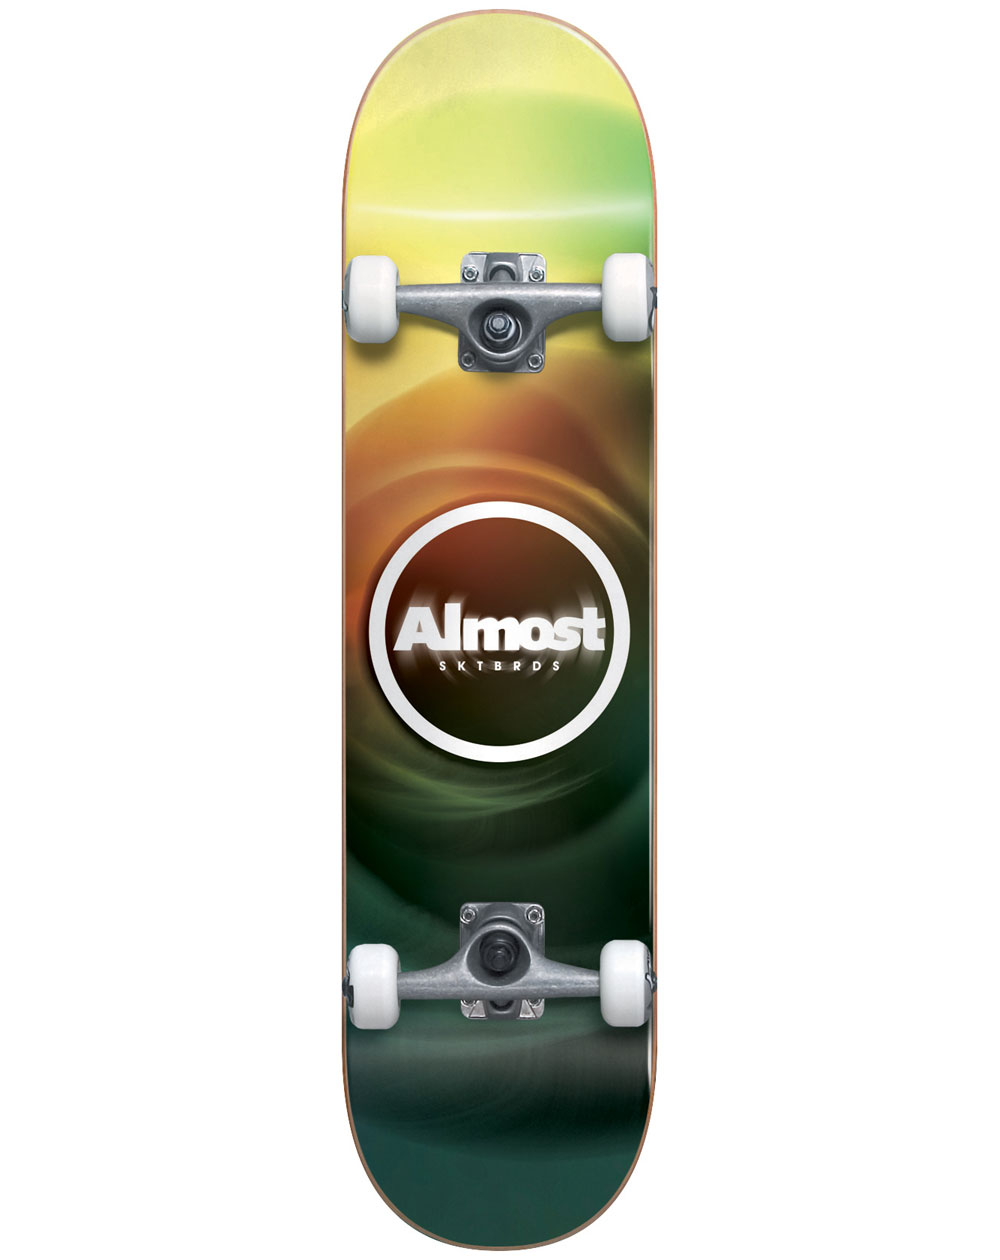 Almost Skateboards Skateboard Completo Blur Resin 7.75"